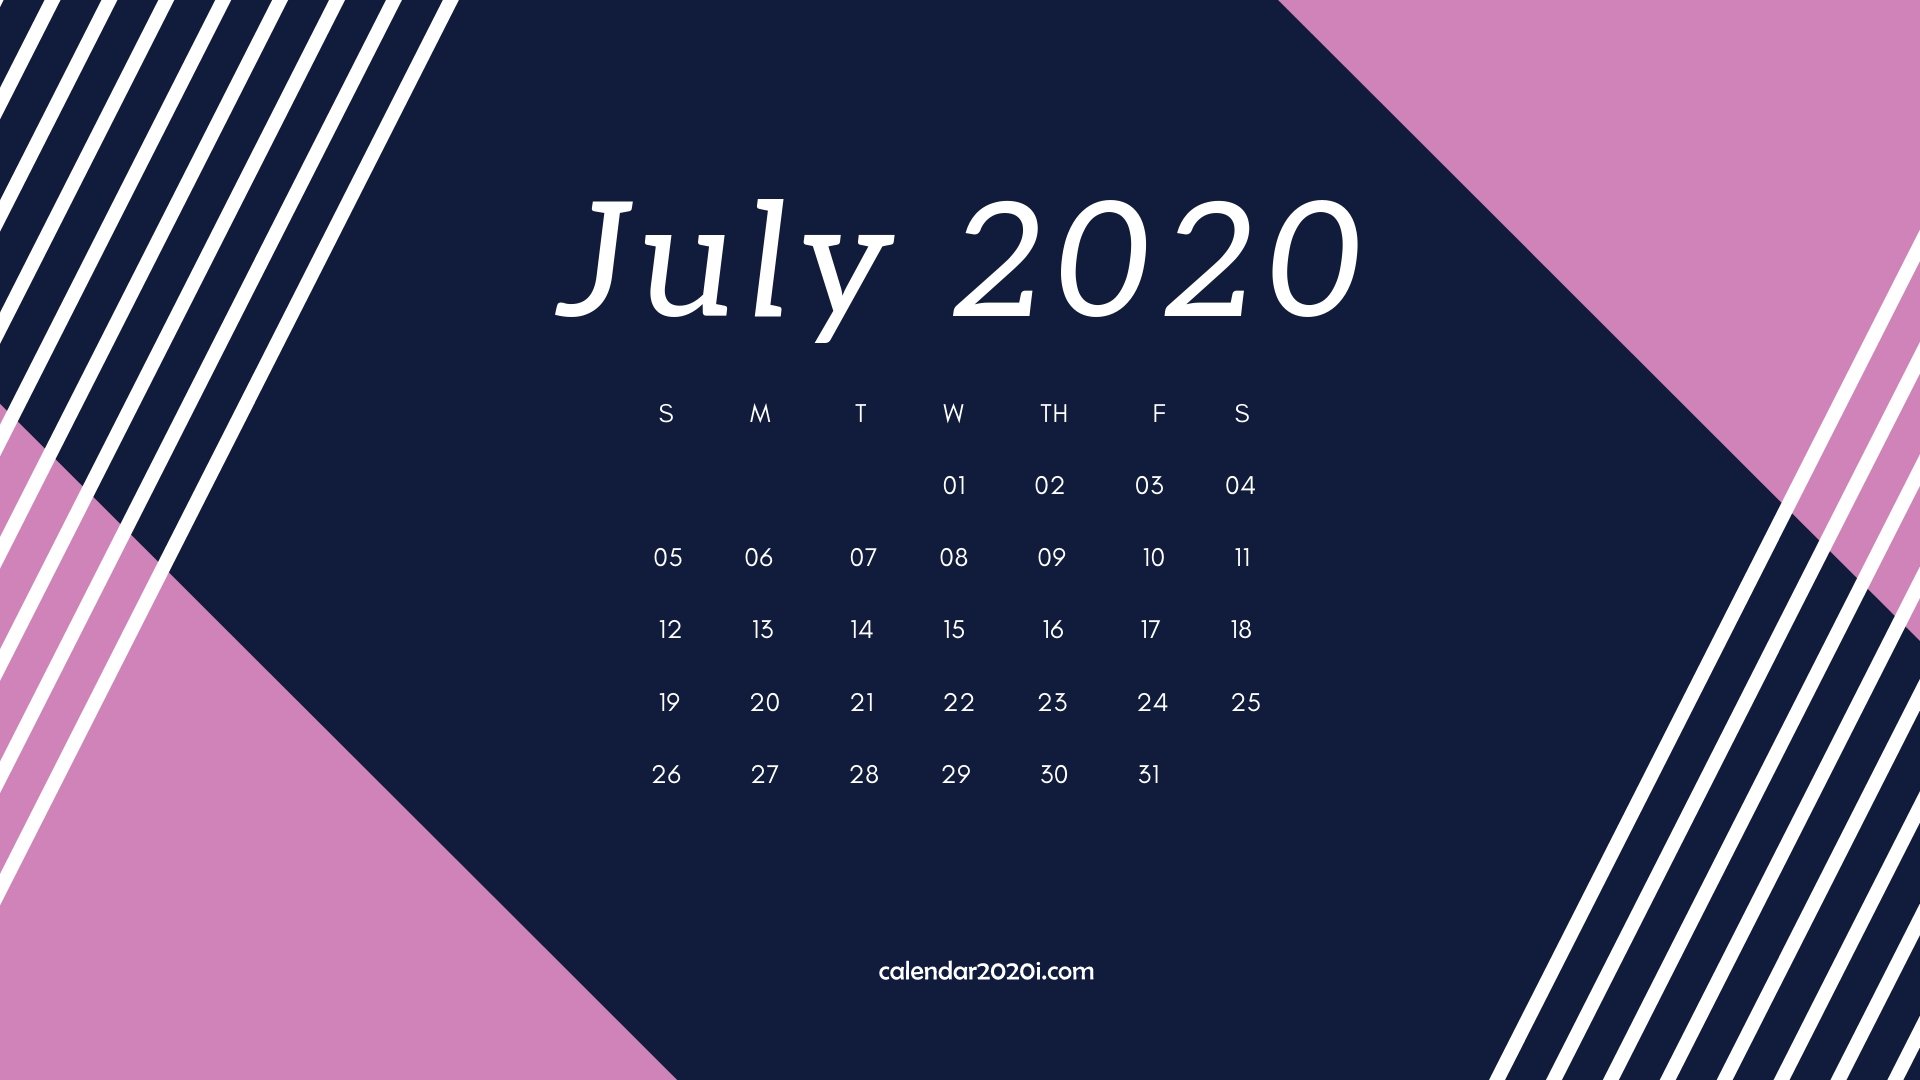 2020 Calendar Monthly HD Wallpapers Calendar 2020